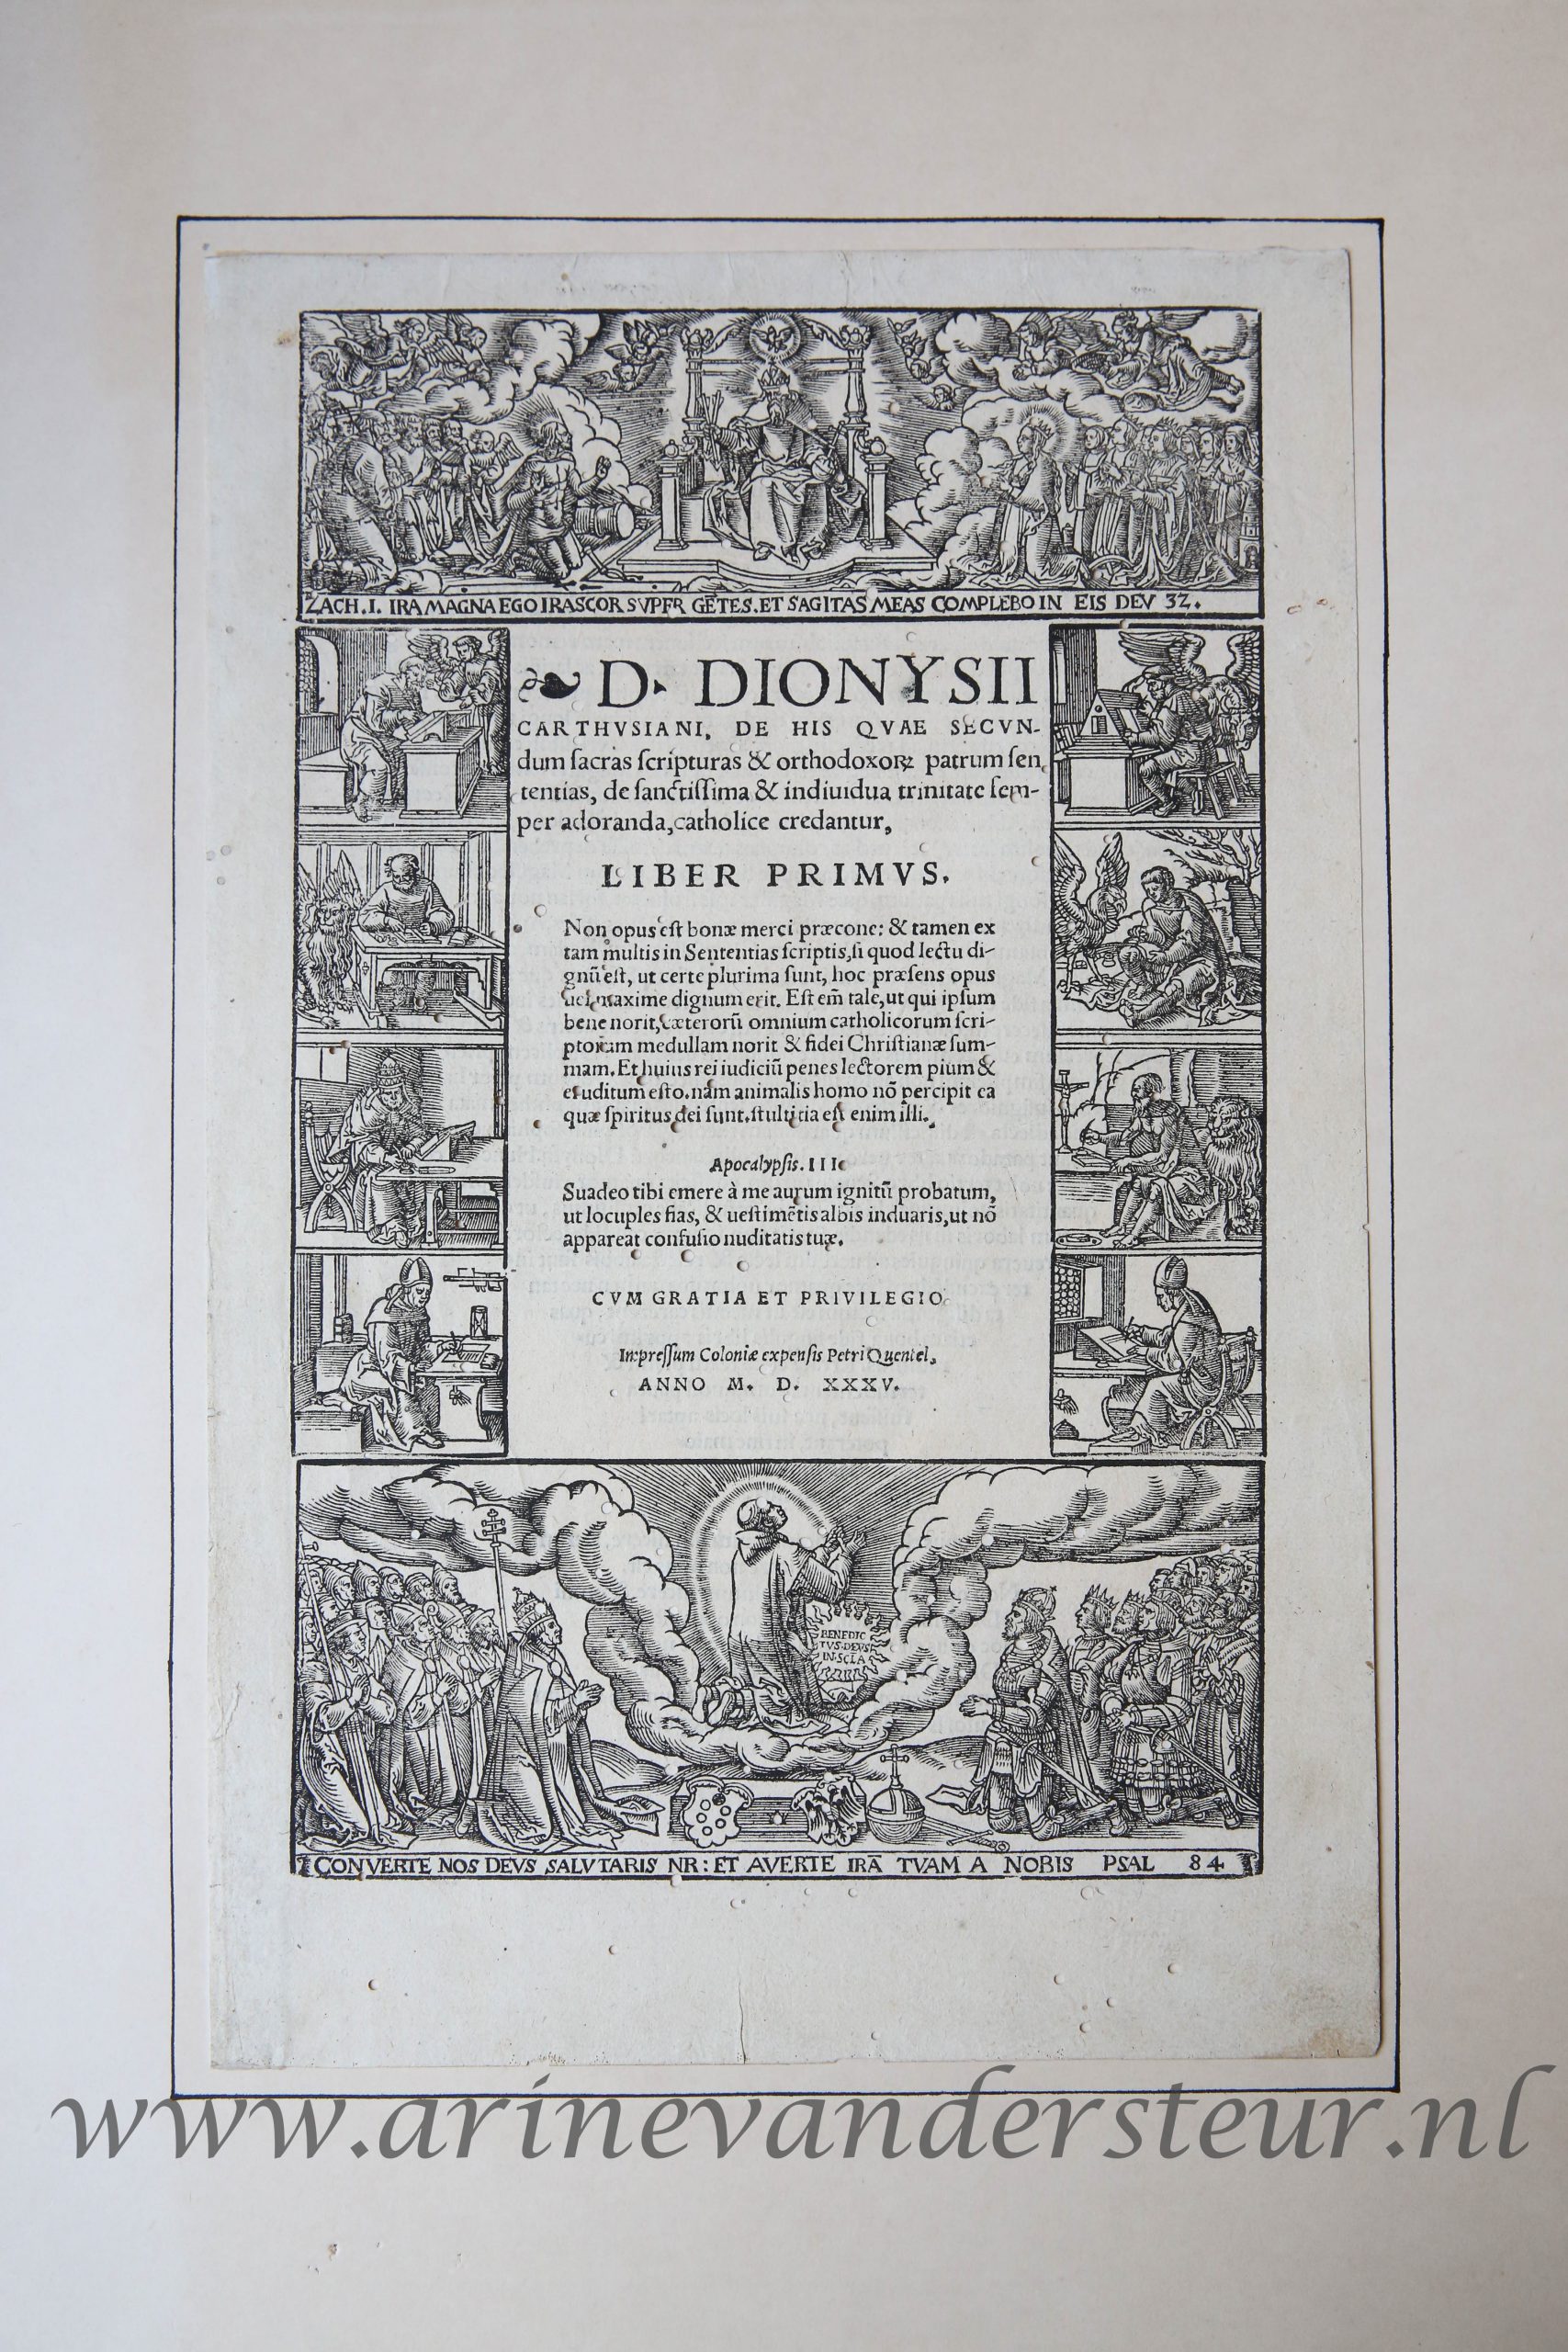 [Antique title page, 1535] D. Dionysii Carthusiani De his quae secundum Sacras Scripturas [et] orthodoxor[um] patrum sententias ... : liber primus, published 1535, 1 p.